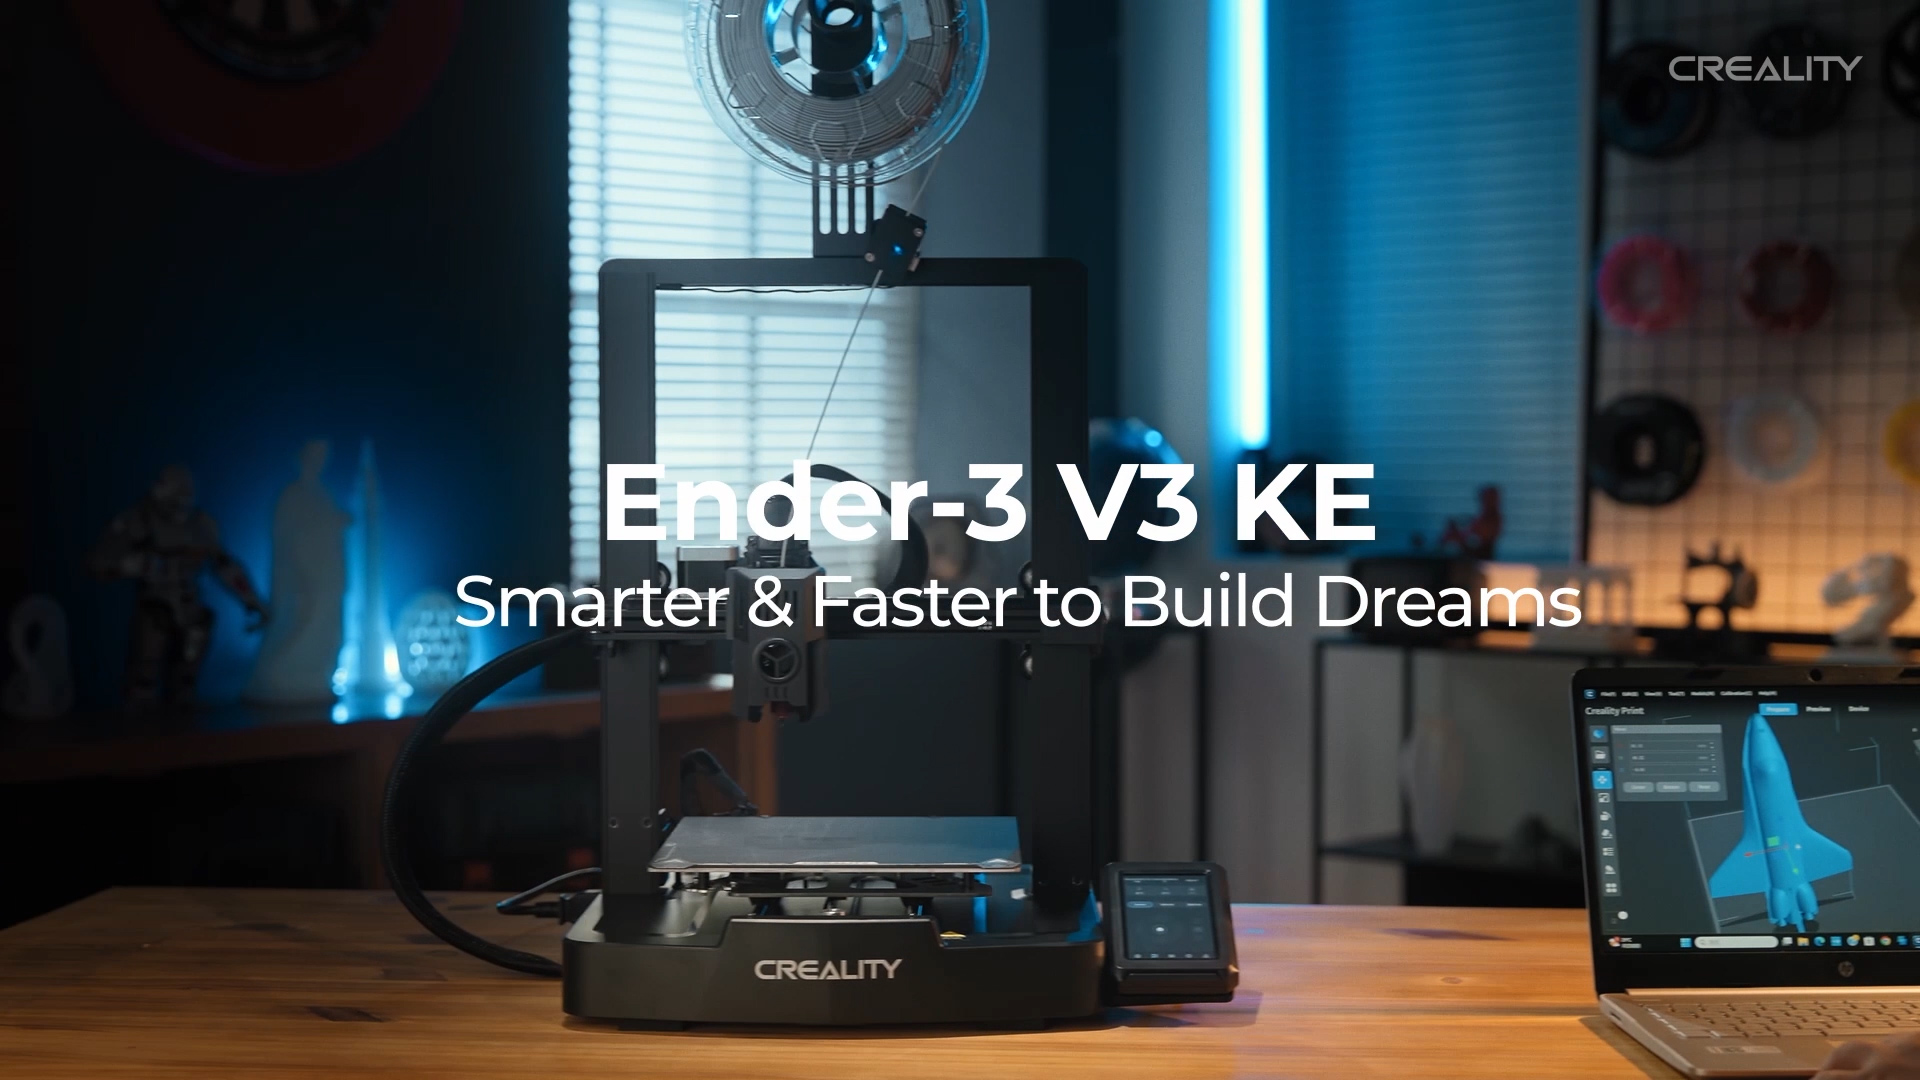 Ender-3 V3 KE - Creality